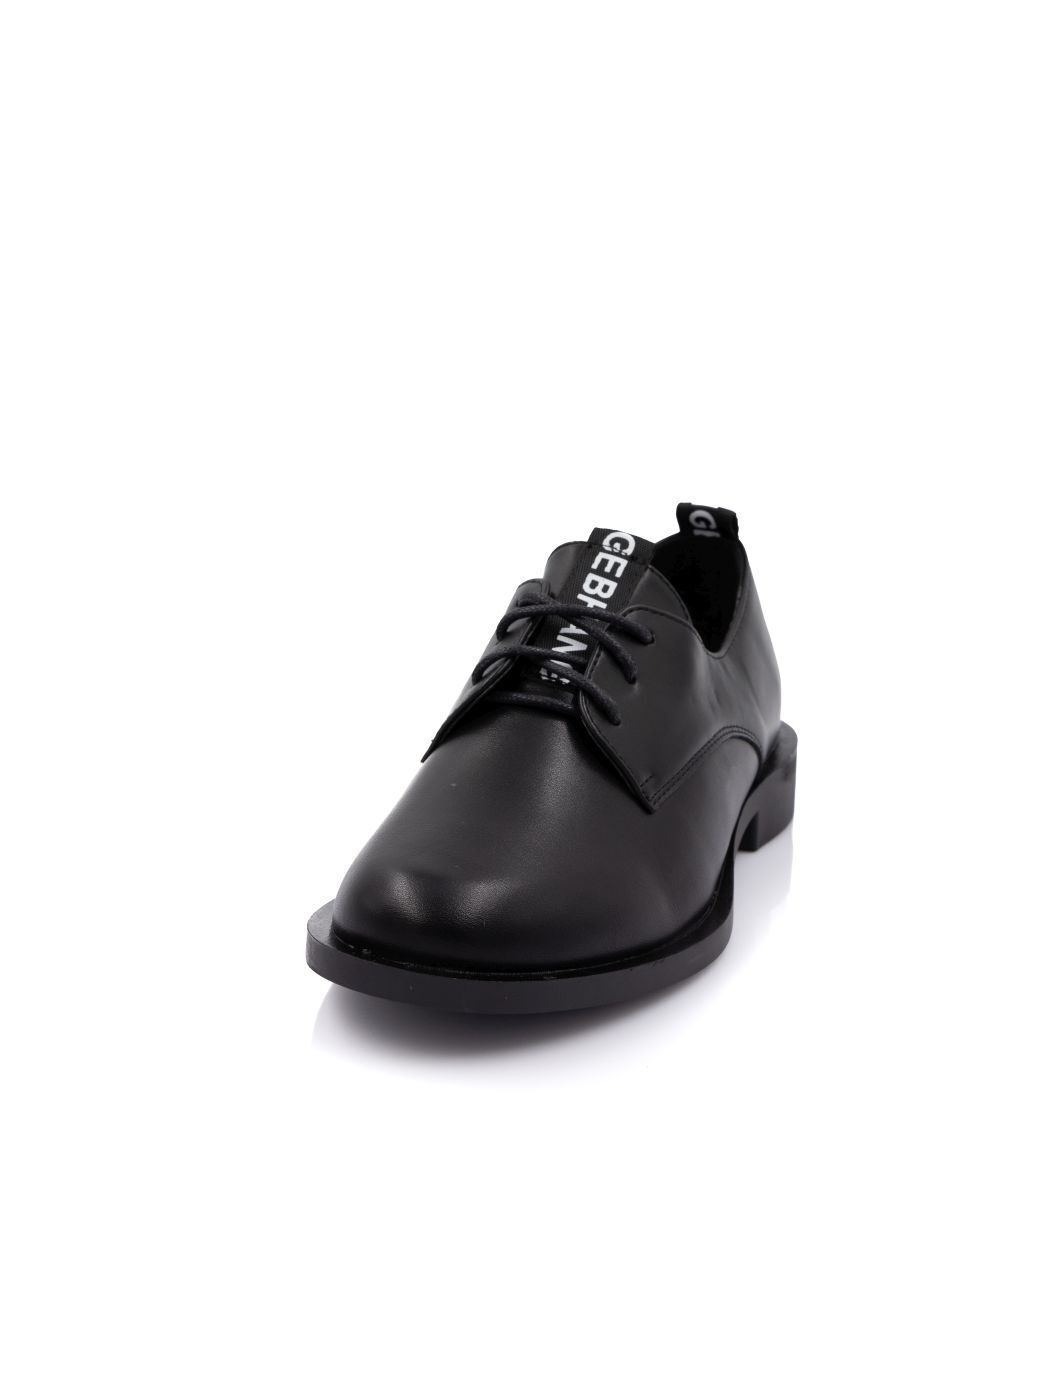 Туфли Oxfords женские черные экокожа каблук устойчивый демисезон 21M вид 0